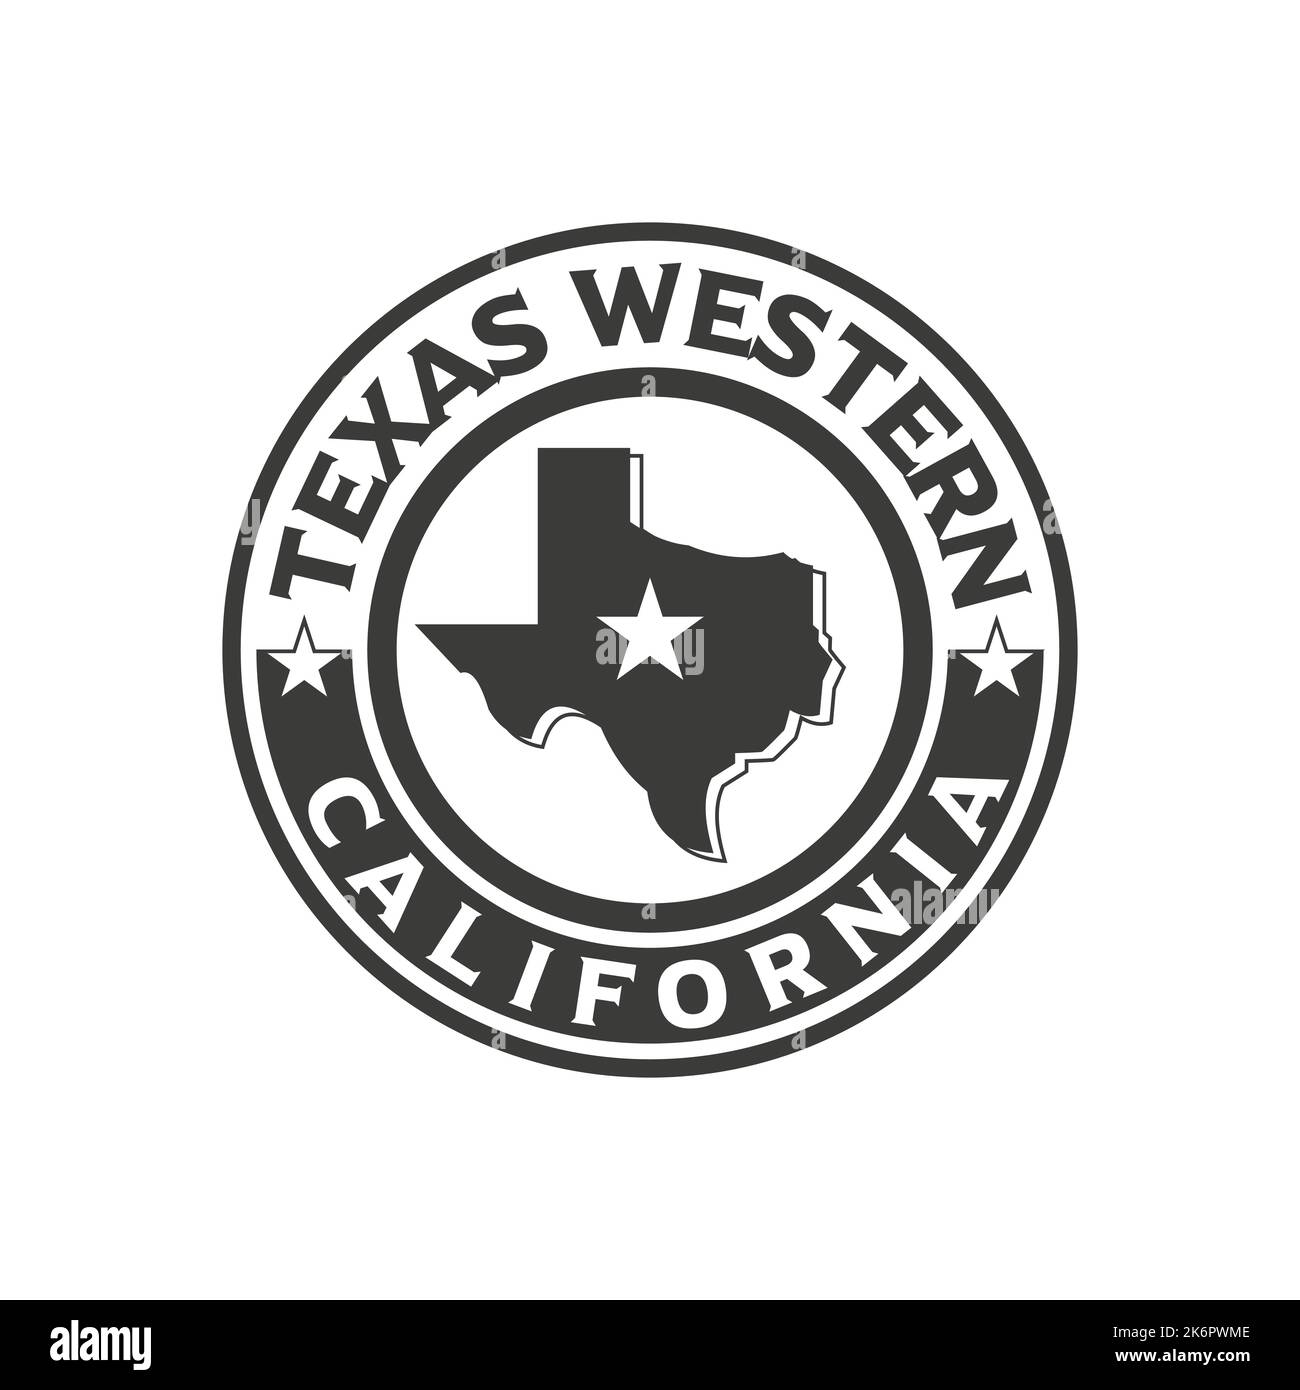 Modello logo dello stato del Texas, stemma, etichette. Single Star Country. Tipografia, Texas USA vintage design. Illustrazione vettoriale dell'emblema della mappa Illustrazione Vettoriale